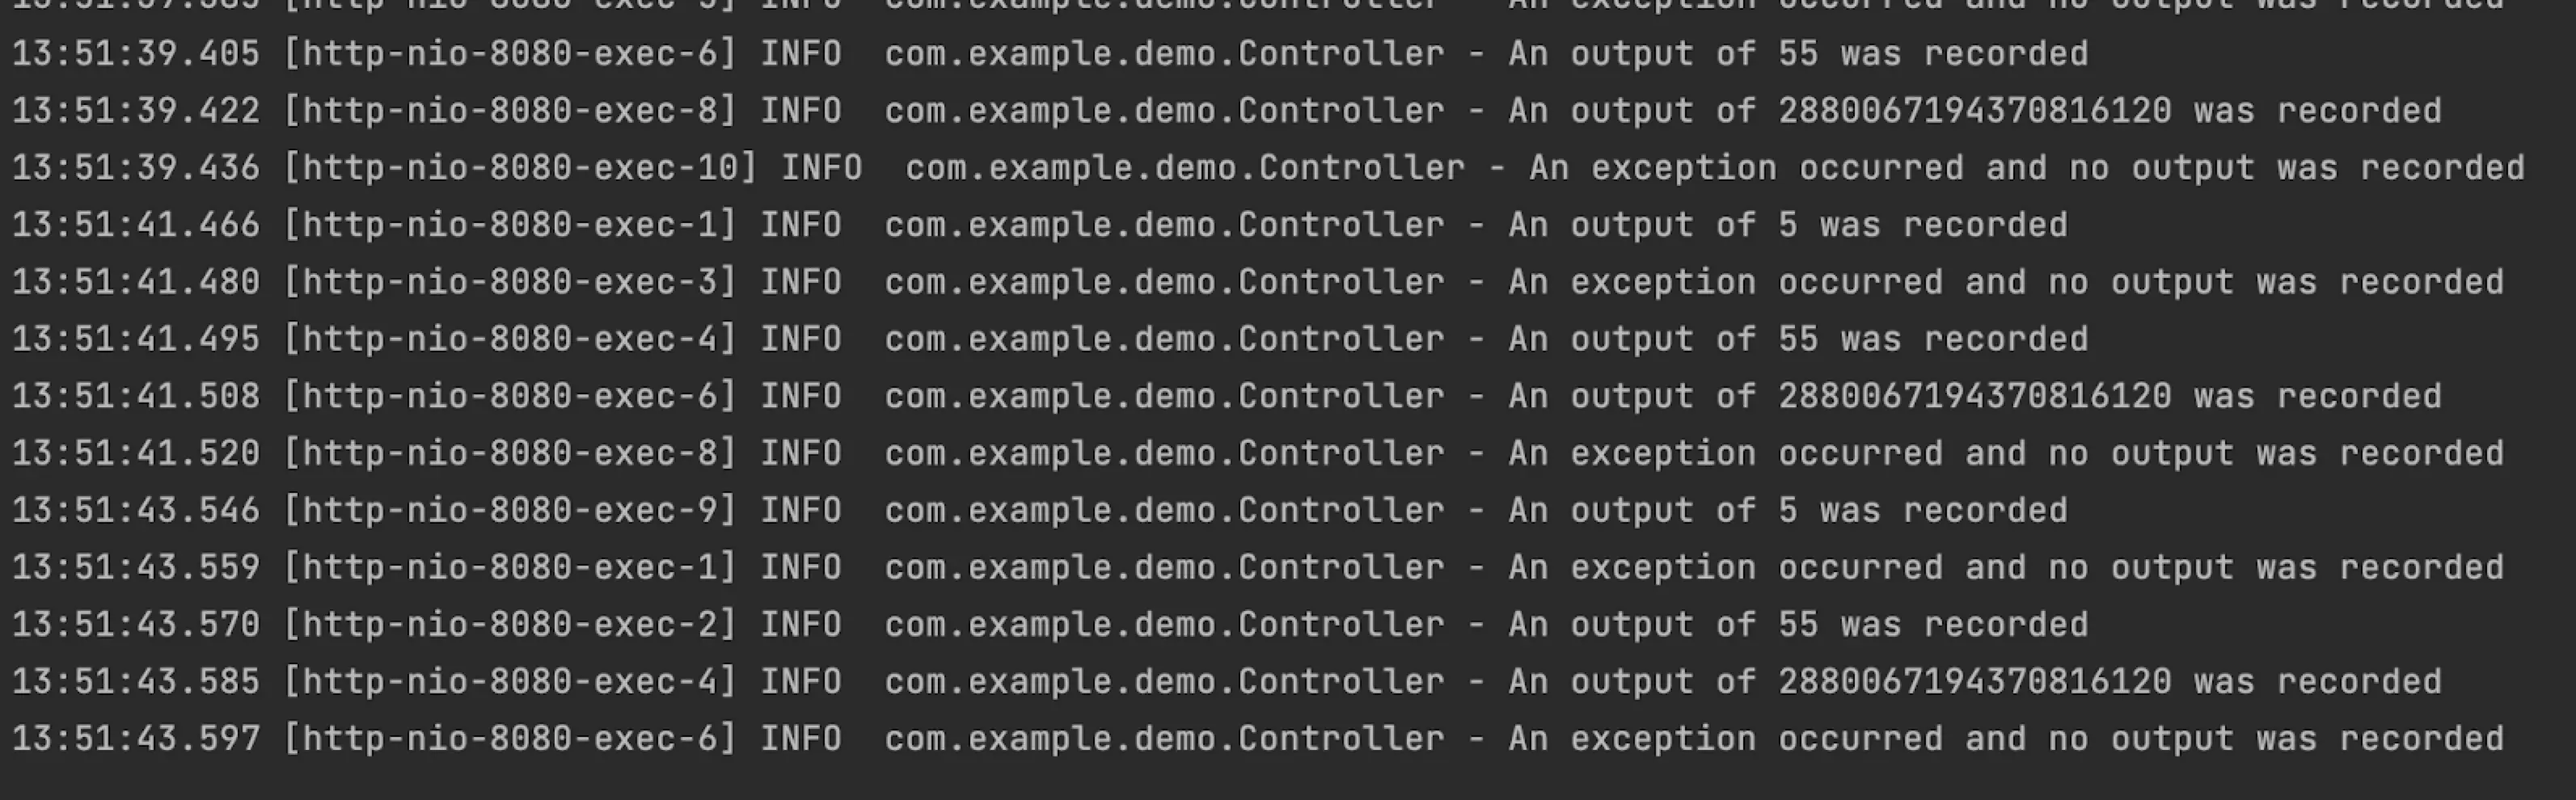 Screenshot showing logs in a terminal